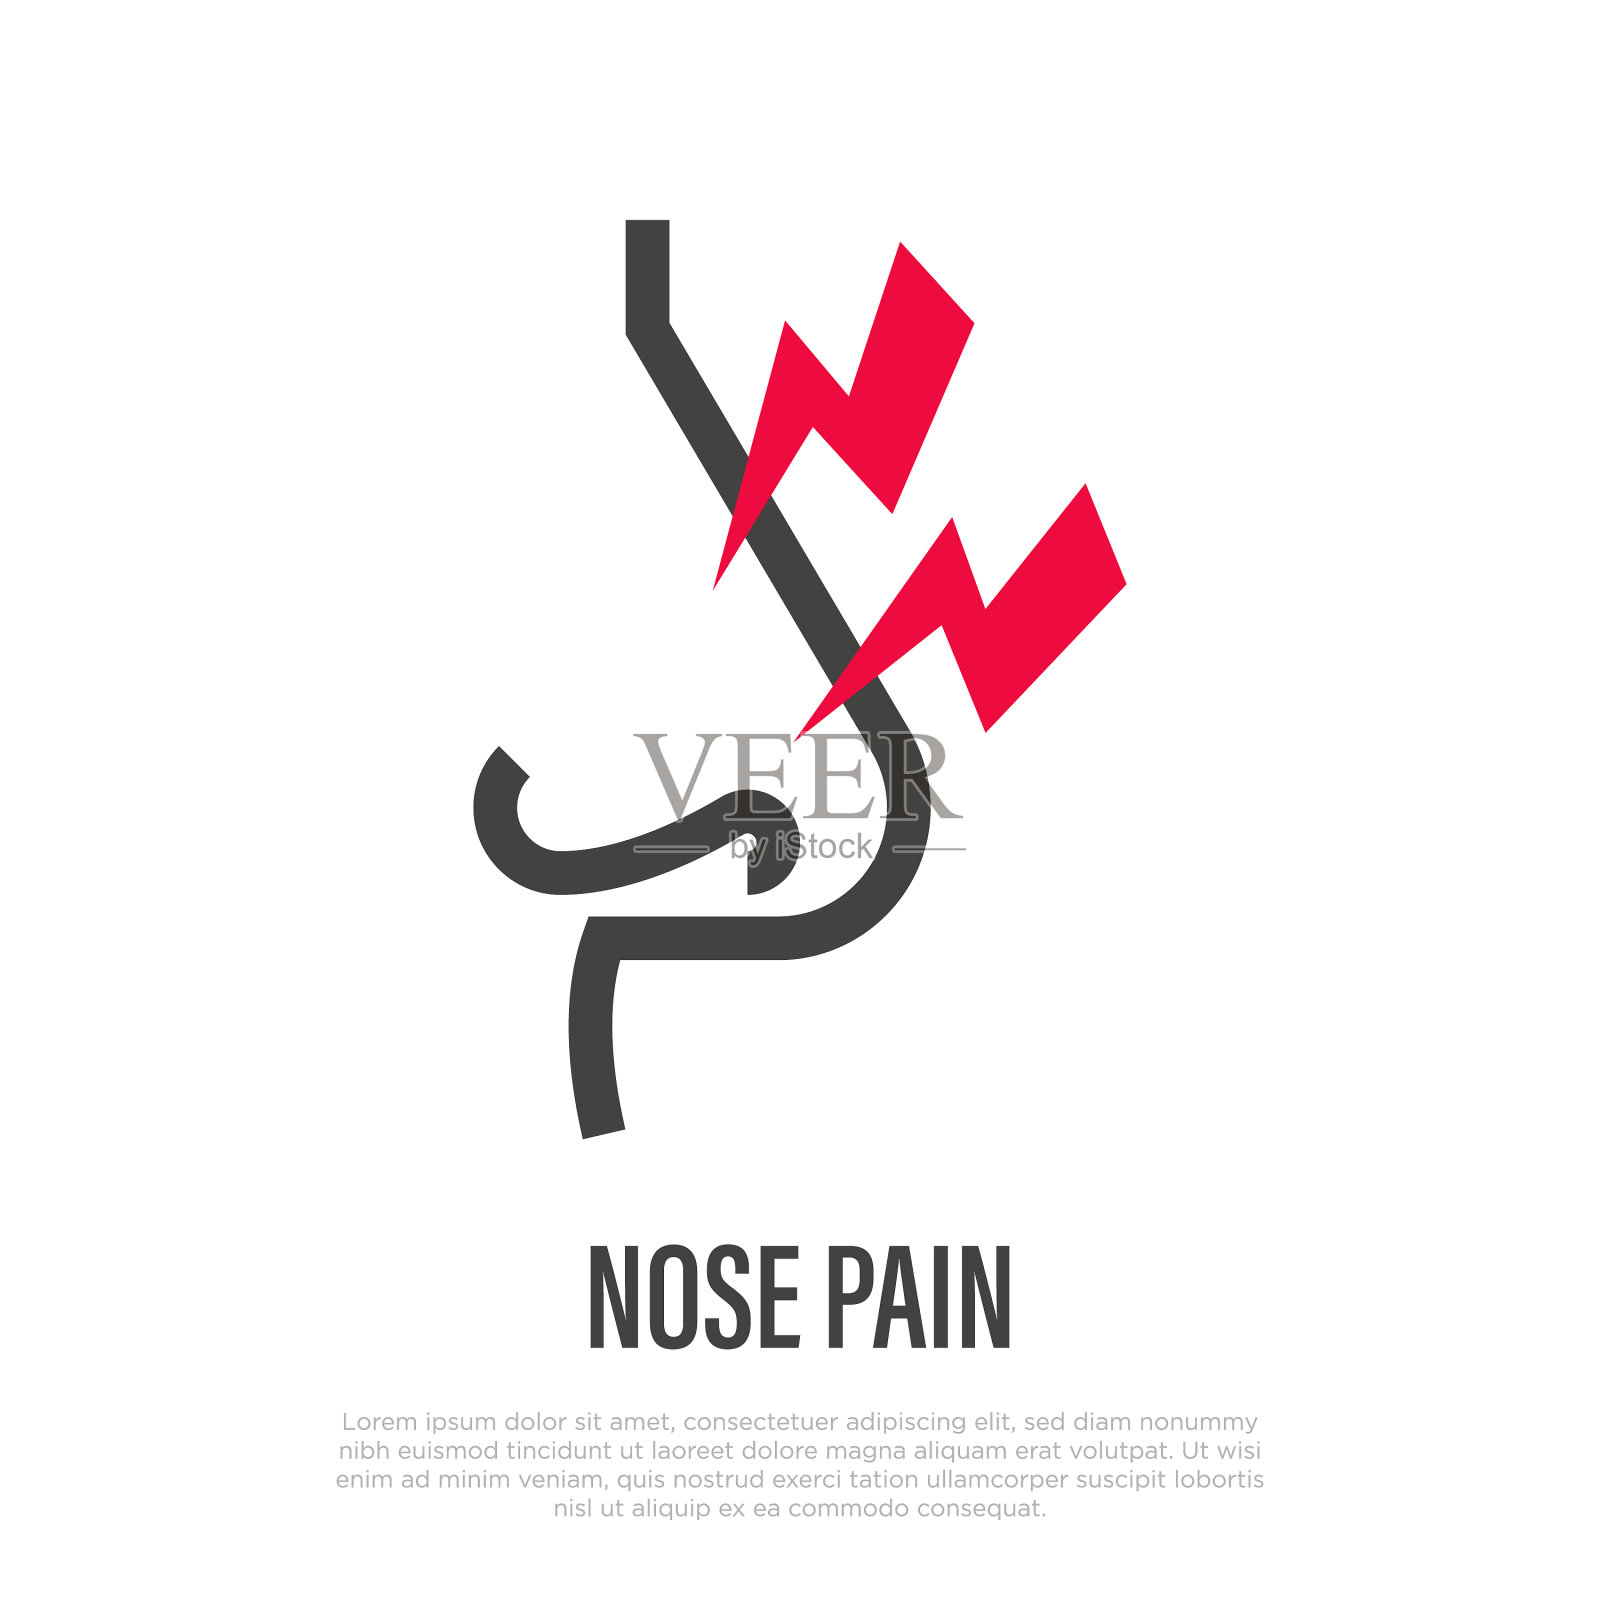 鼻痛细线象徵鼻炎插画图片素材